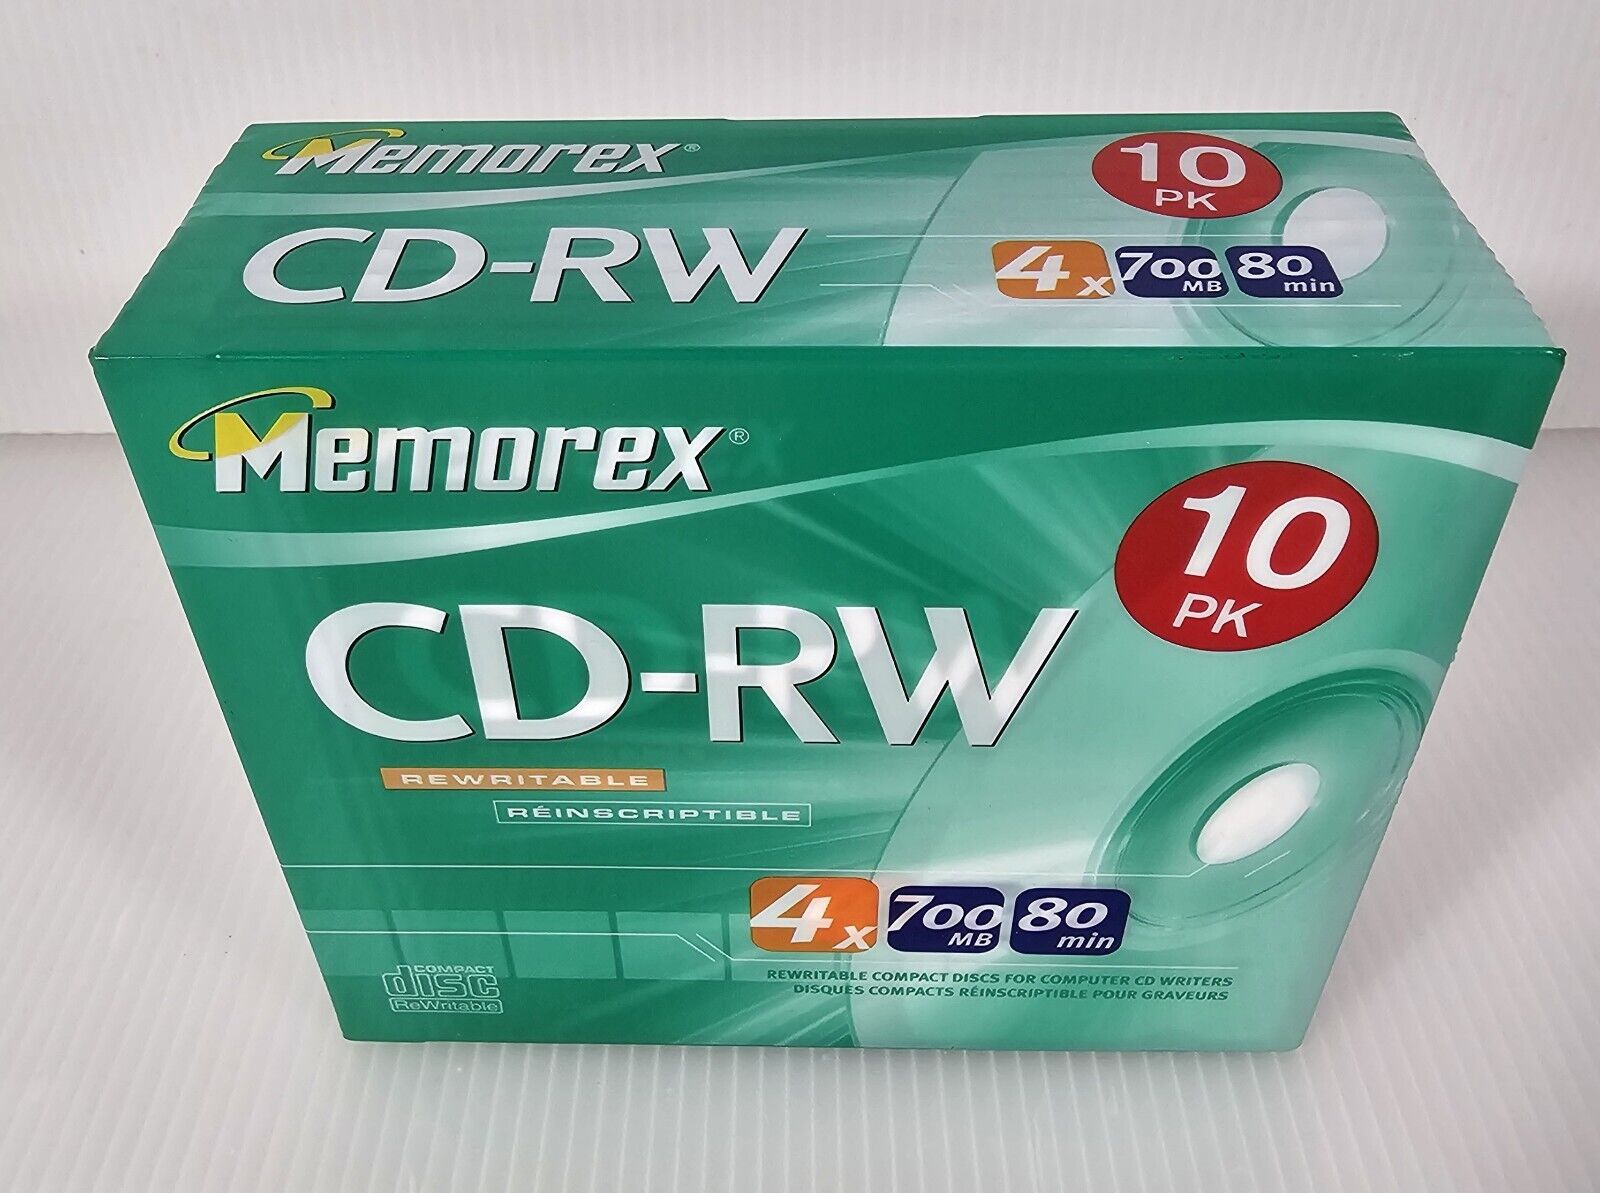 Memorex CD-RW 10 Pack, 4x 700mb 80min, New Sealed 